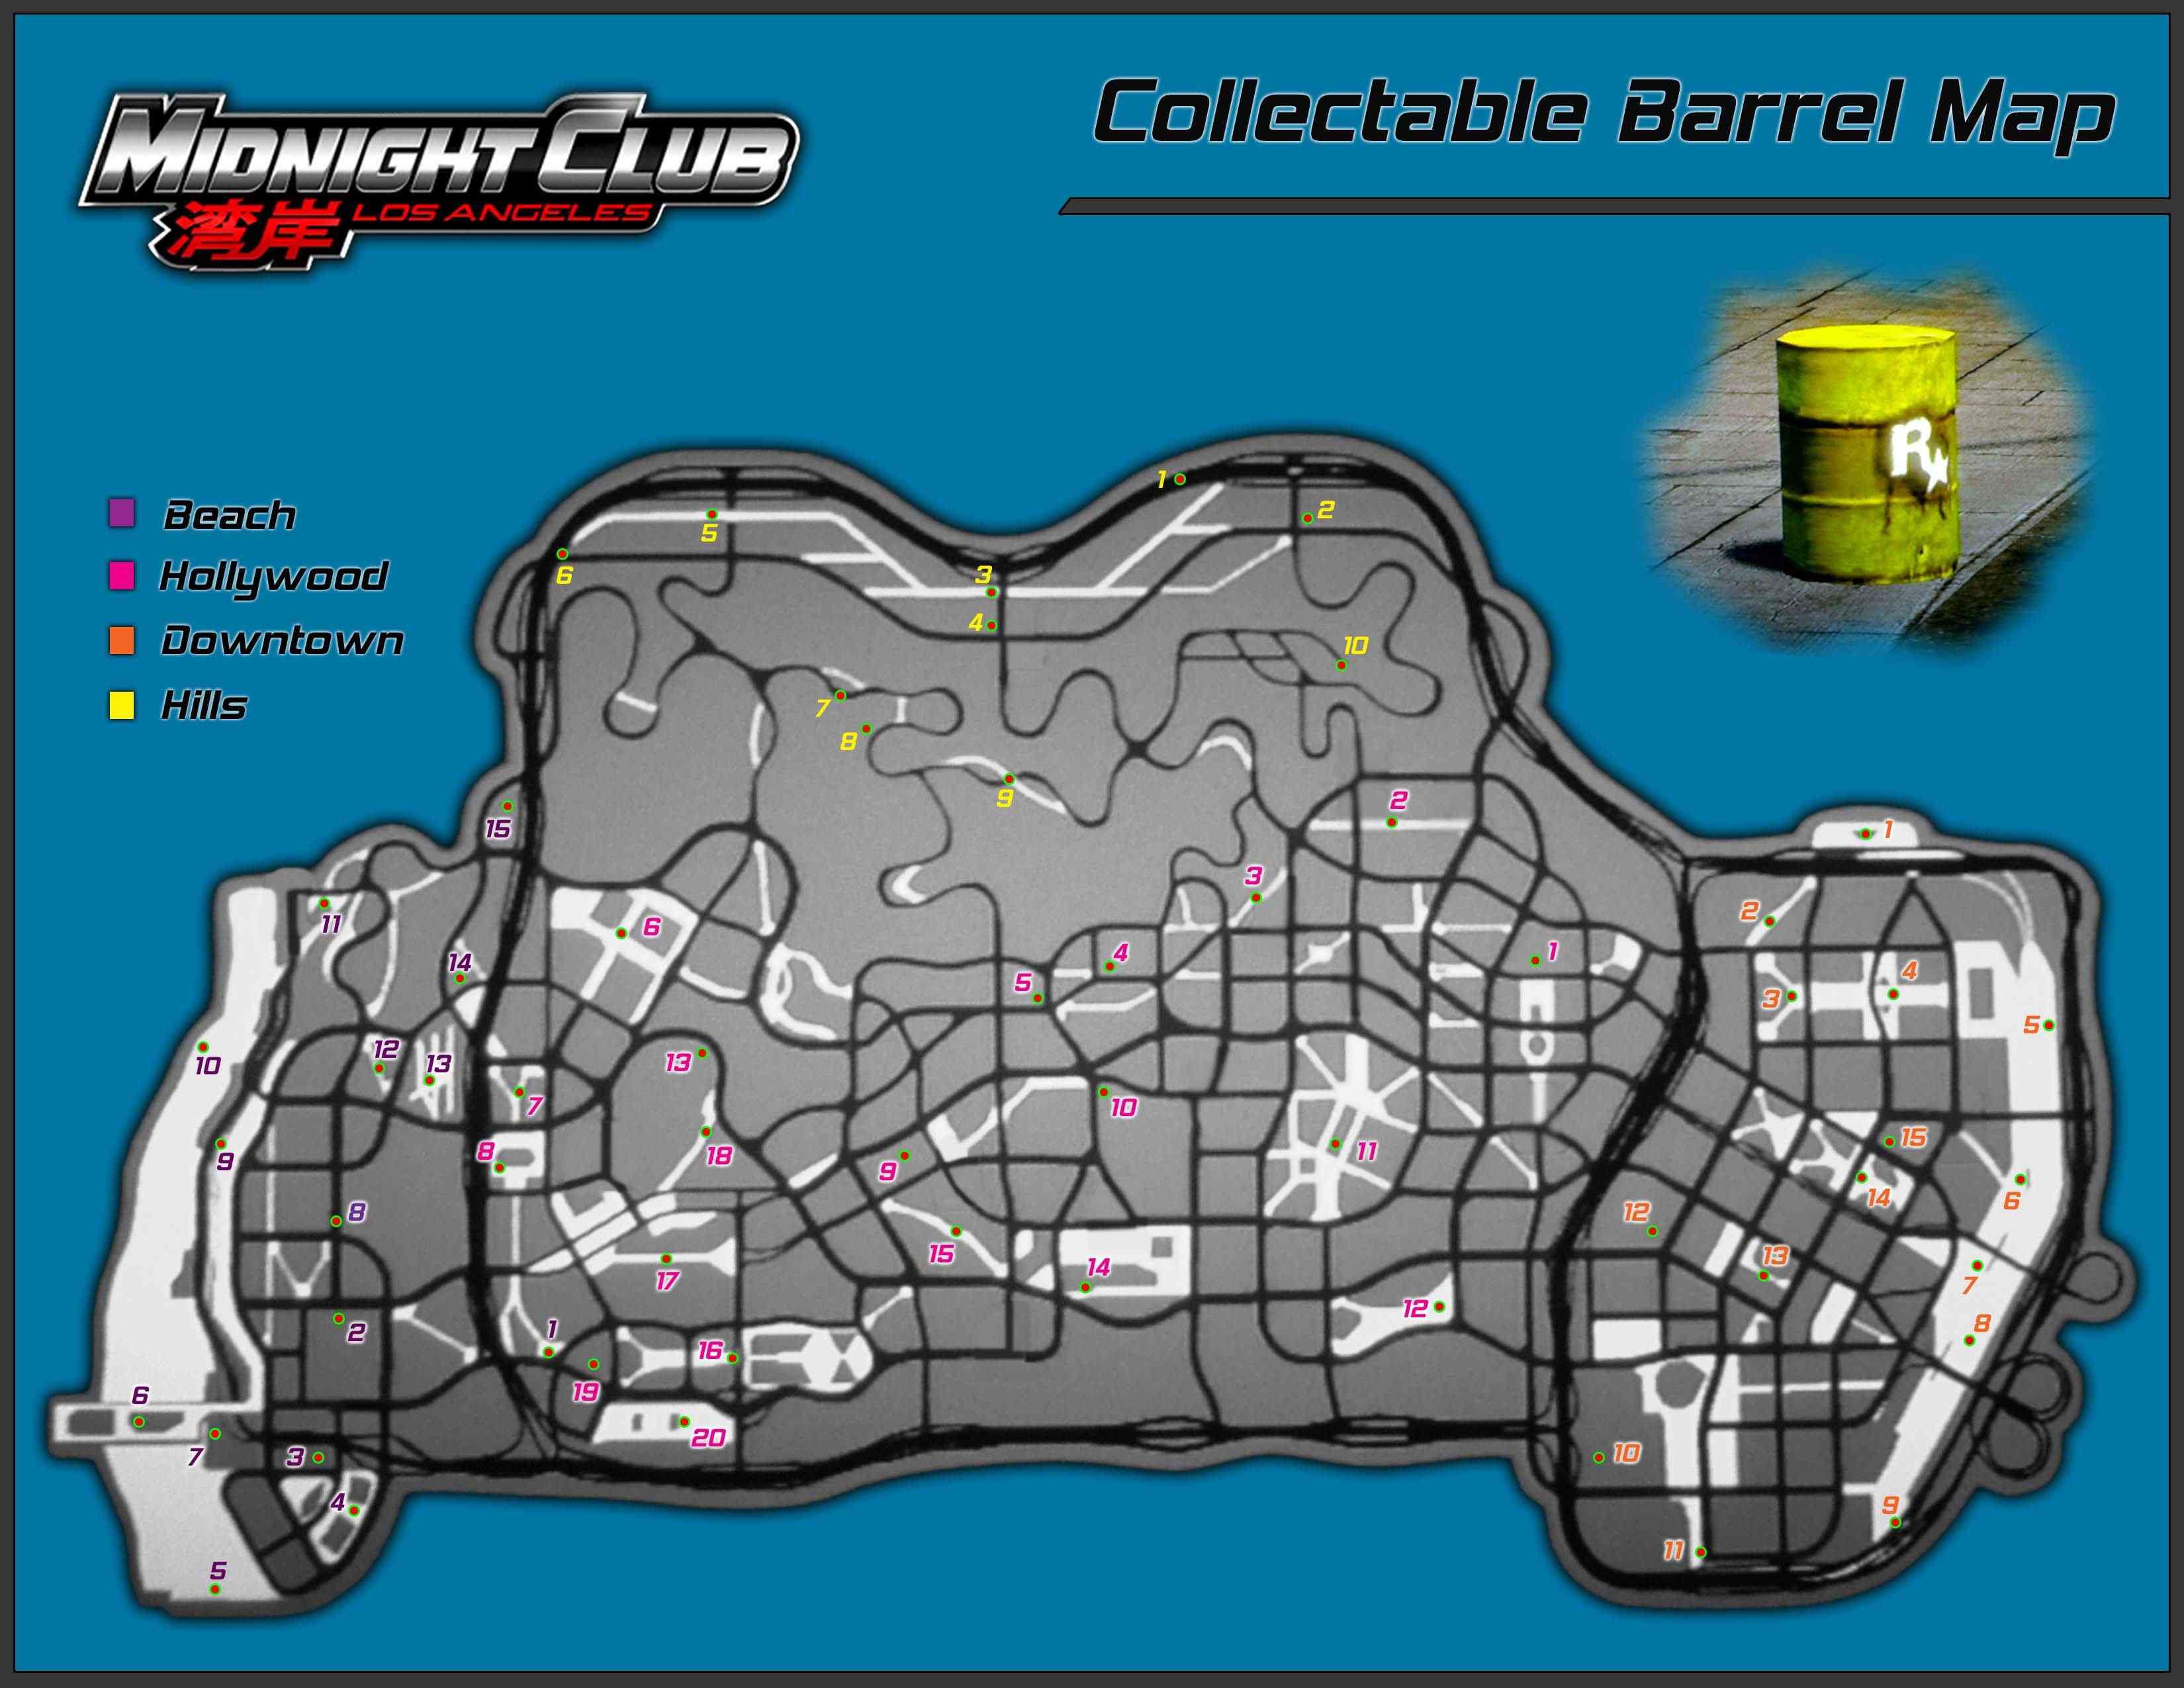 Используйте карту, чтобы найти каждую скрытую бочку Rockstar в Midnight Club: Los Angeles для Xbox 360.